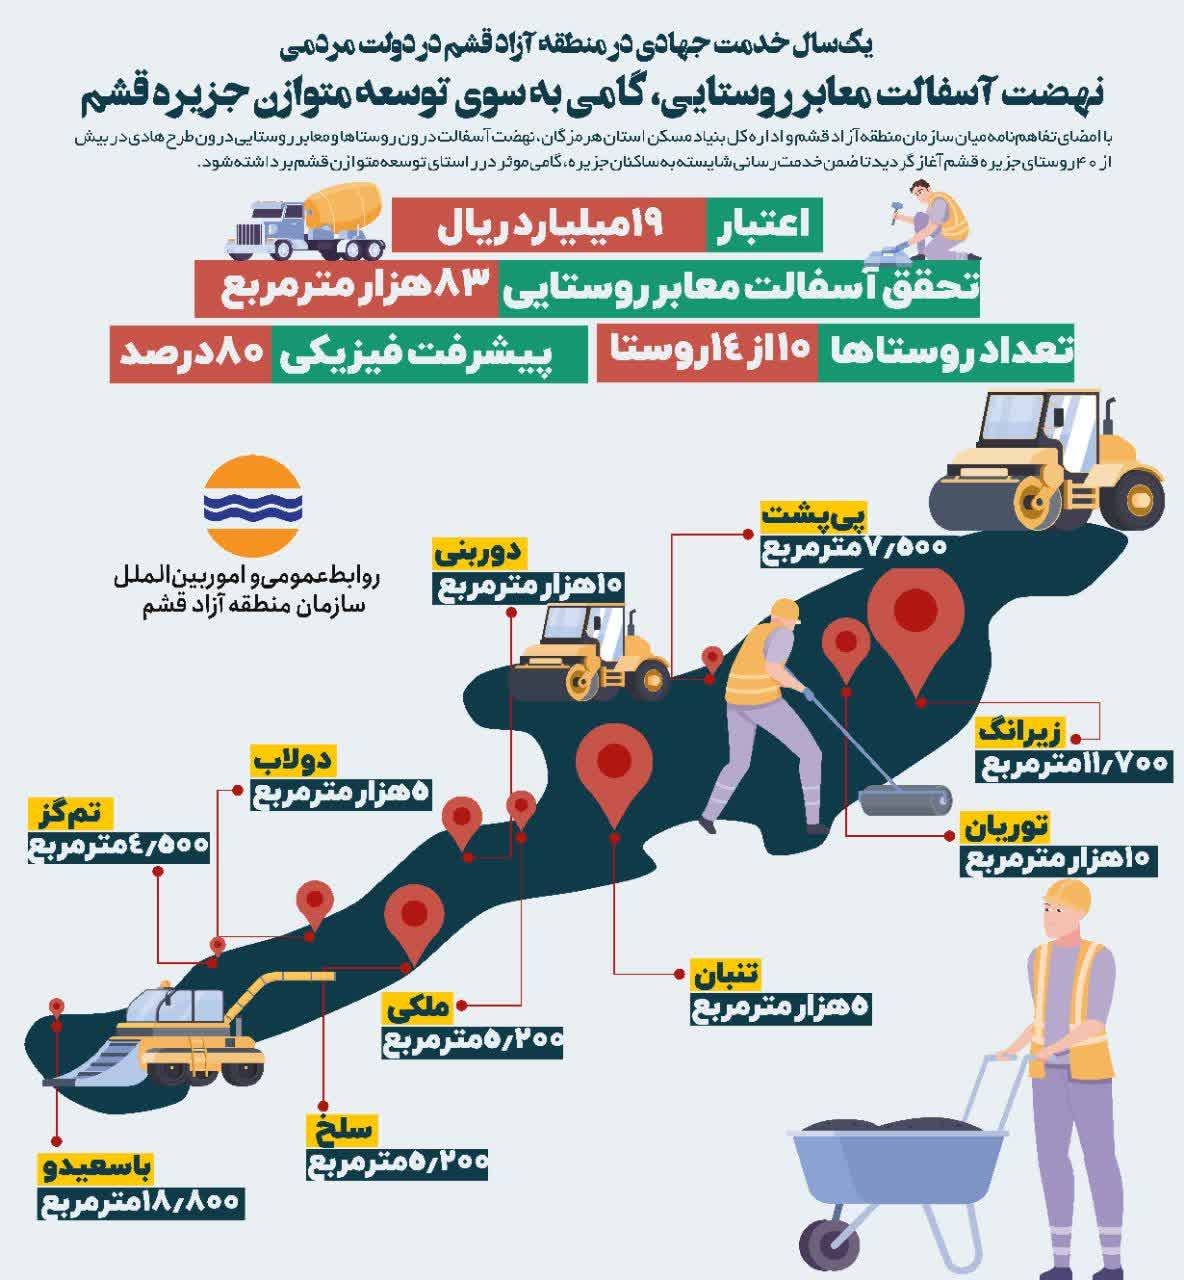 گزارش عملکرد یک سال اخیر منطقه آزاد قشم منتشر شد